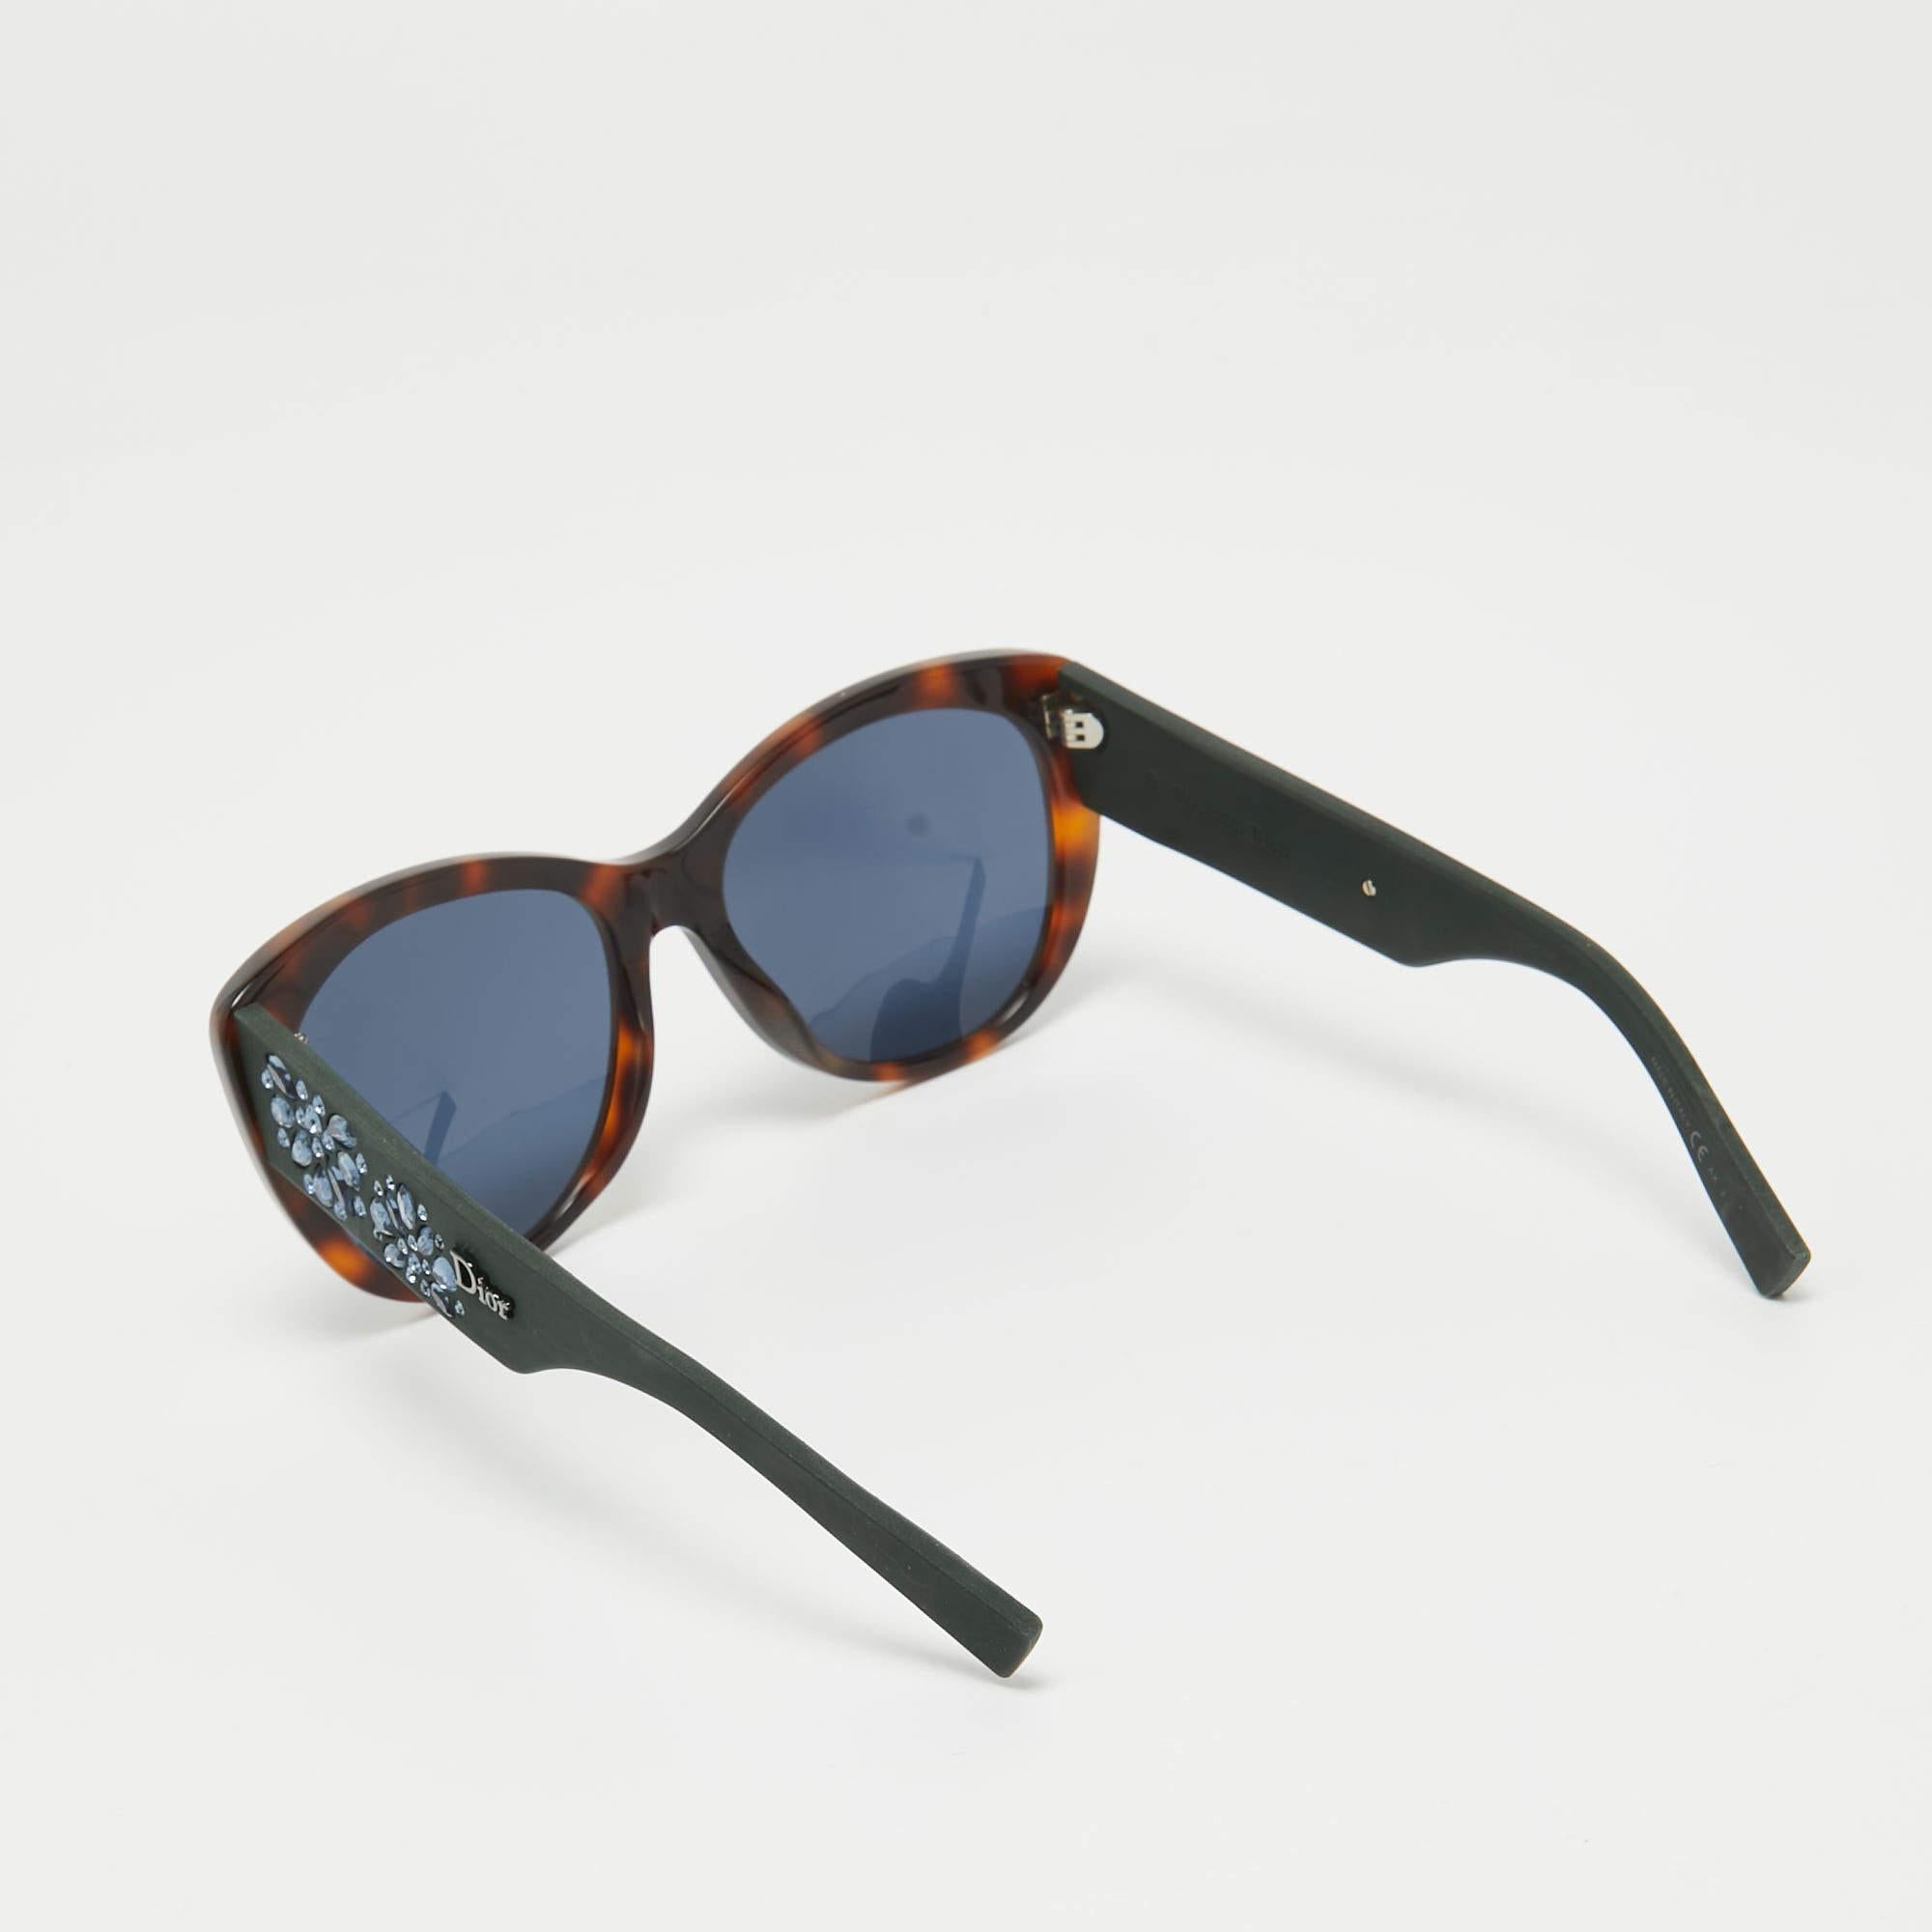 Une paire de lunettes de soleil Dior sera certainement un achat de choix. Dotées d'une monture tendance et de verres destinés à protéger vos yeux, ces lunettes de soleil sont idéales pour être portées toute la journée.

